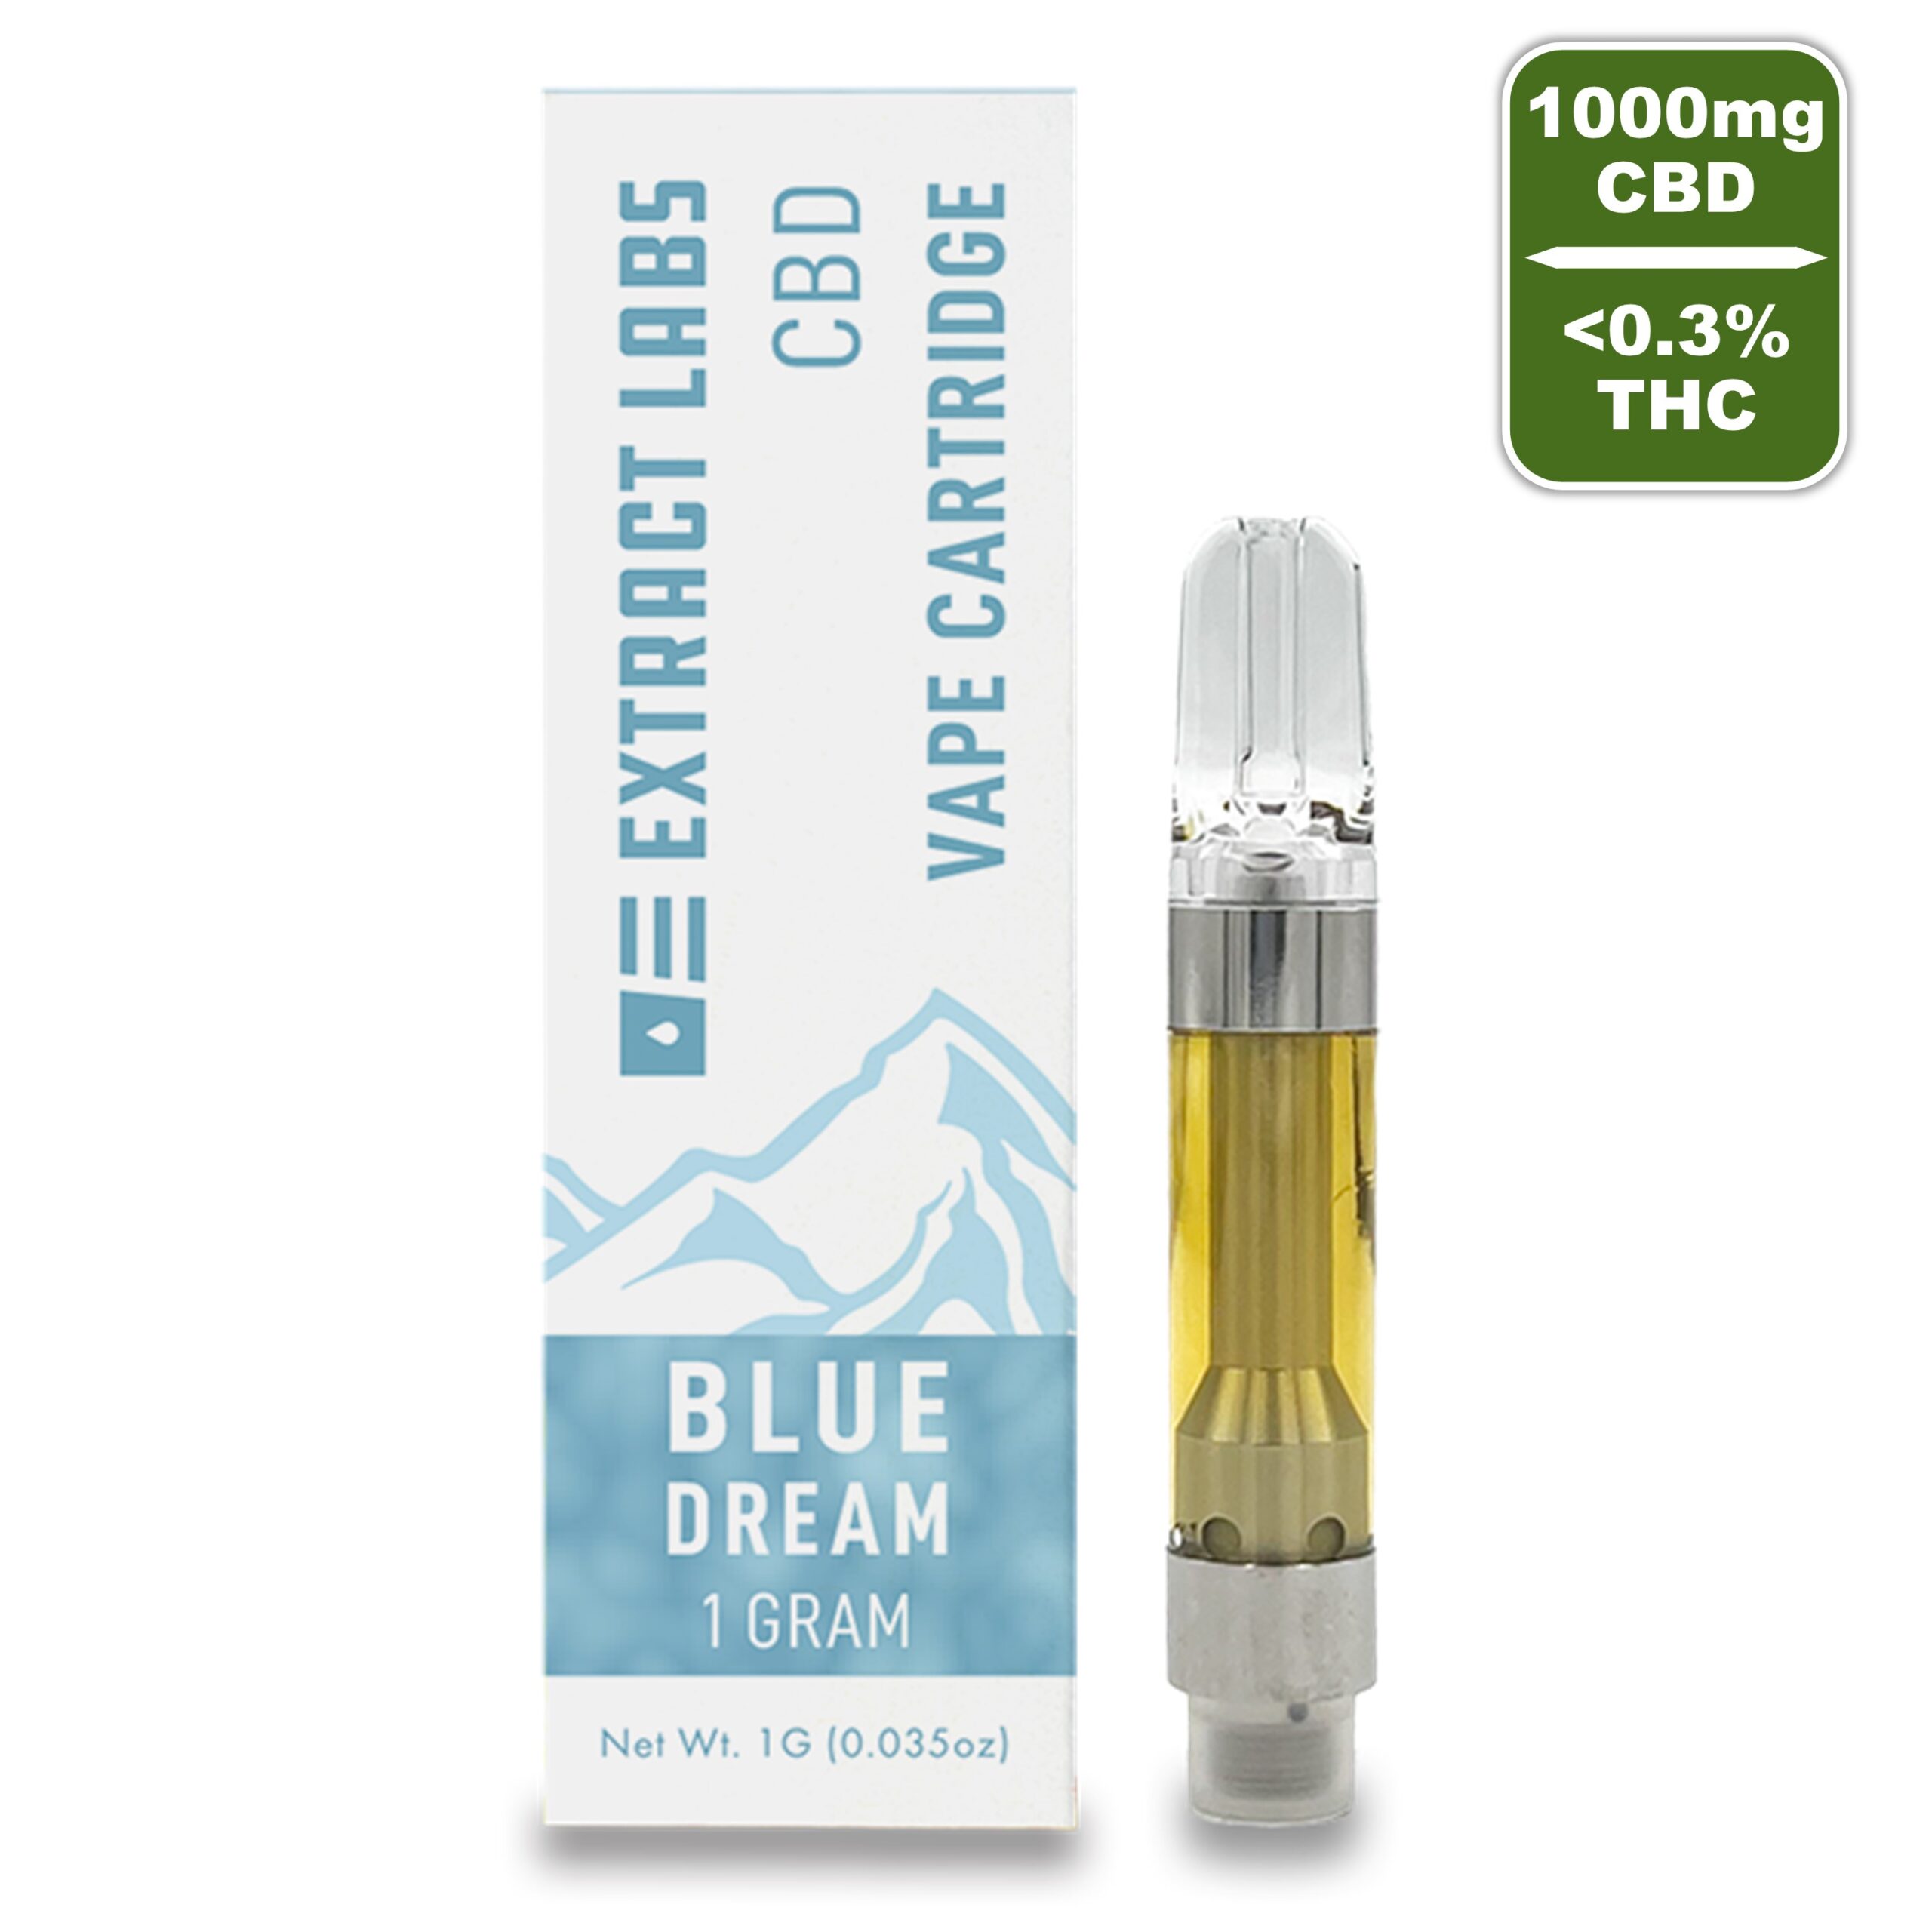 Extract Labs - Blue Dream Vape cartridge CBD + THC (2)